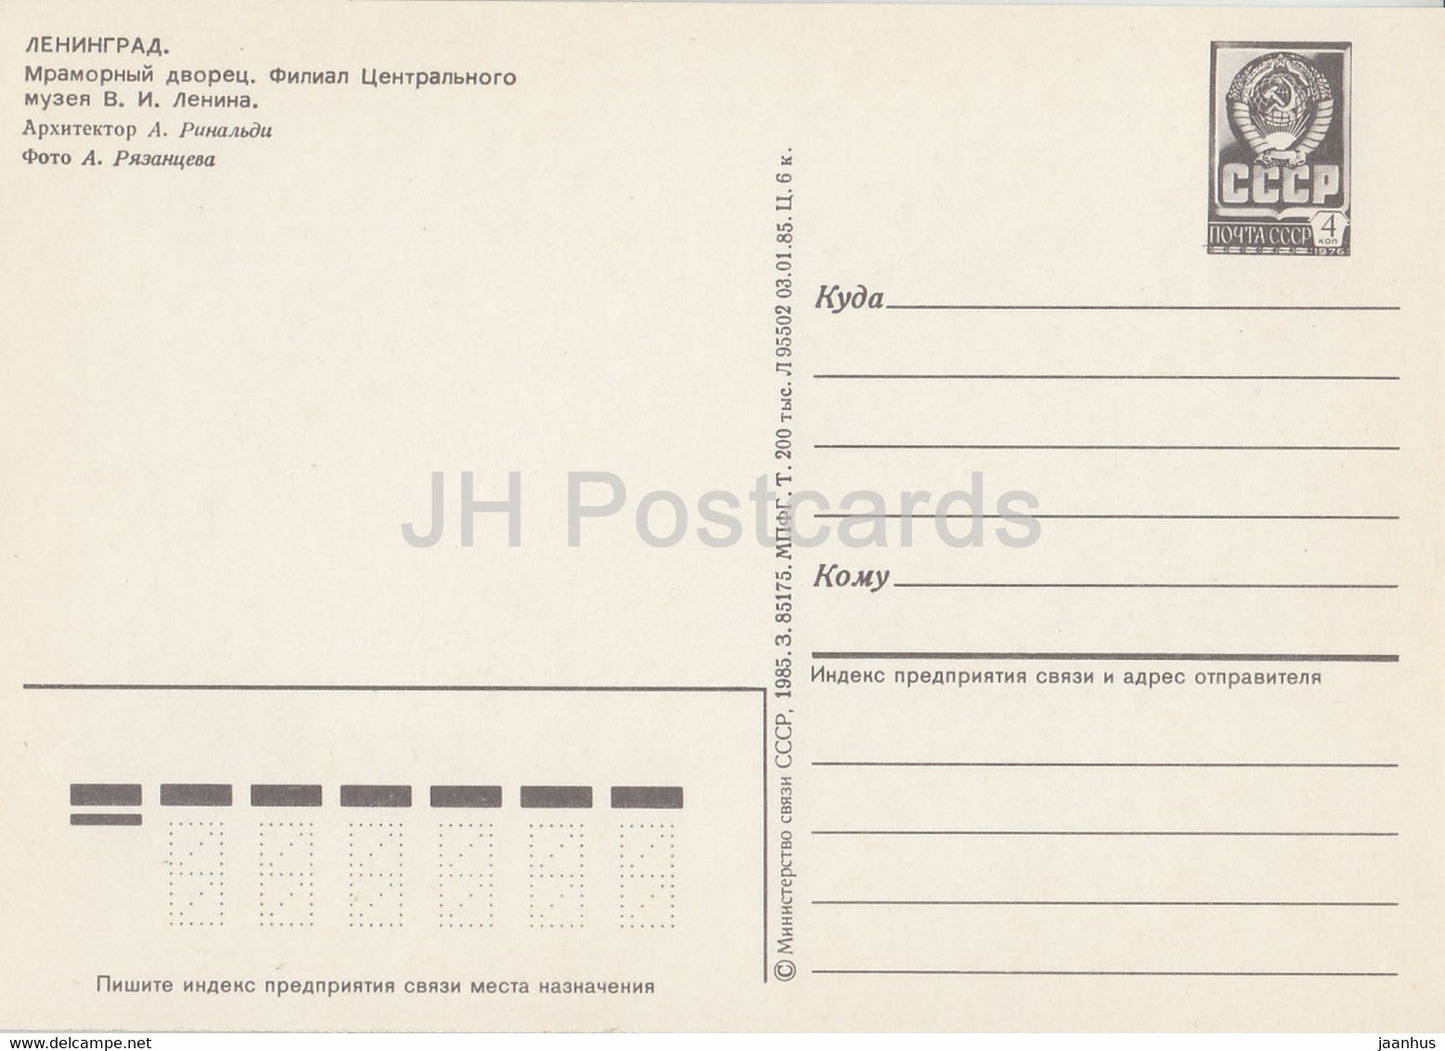 Leningrad - Saint-Pétersbourg - Palais de Marbre - entier postal - 1985 - Russie URSS - inutilisé